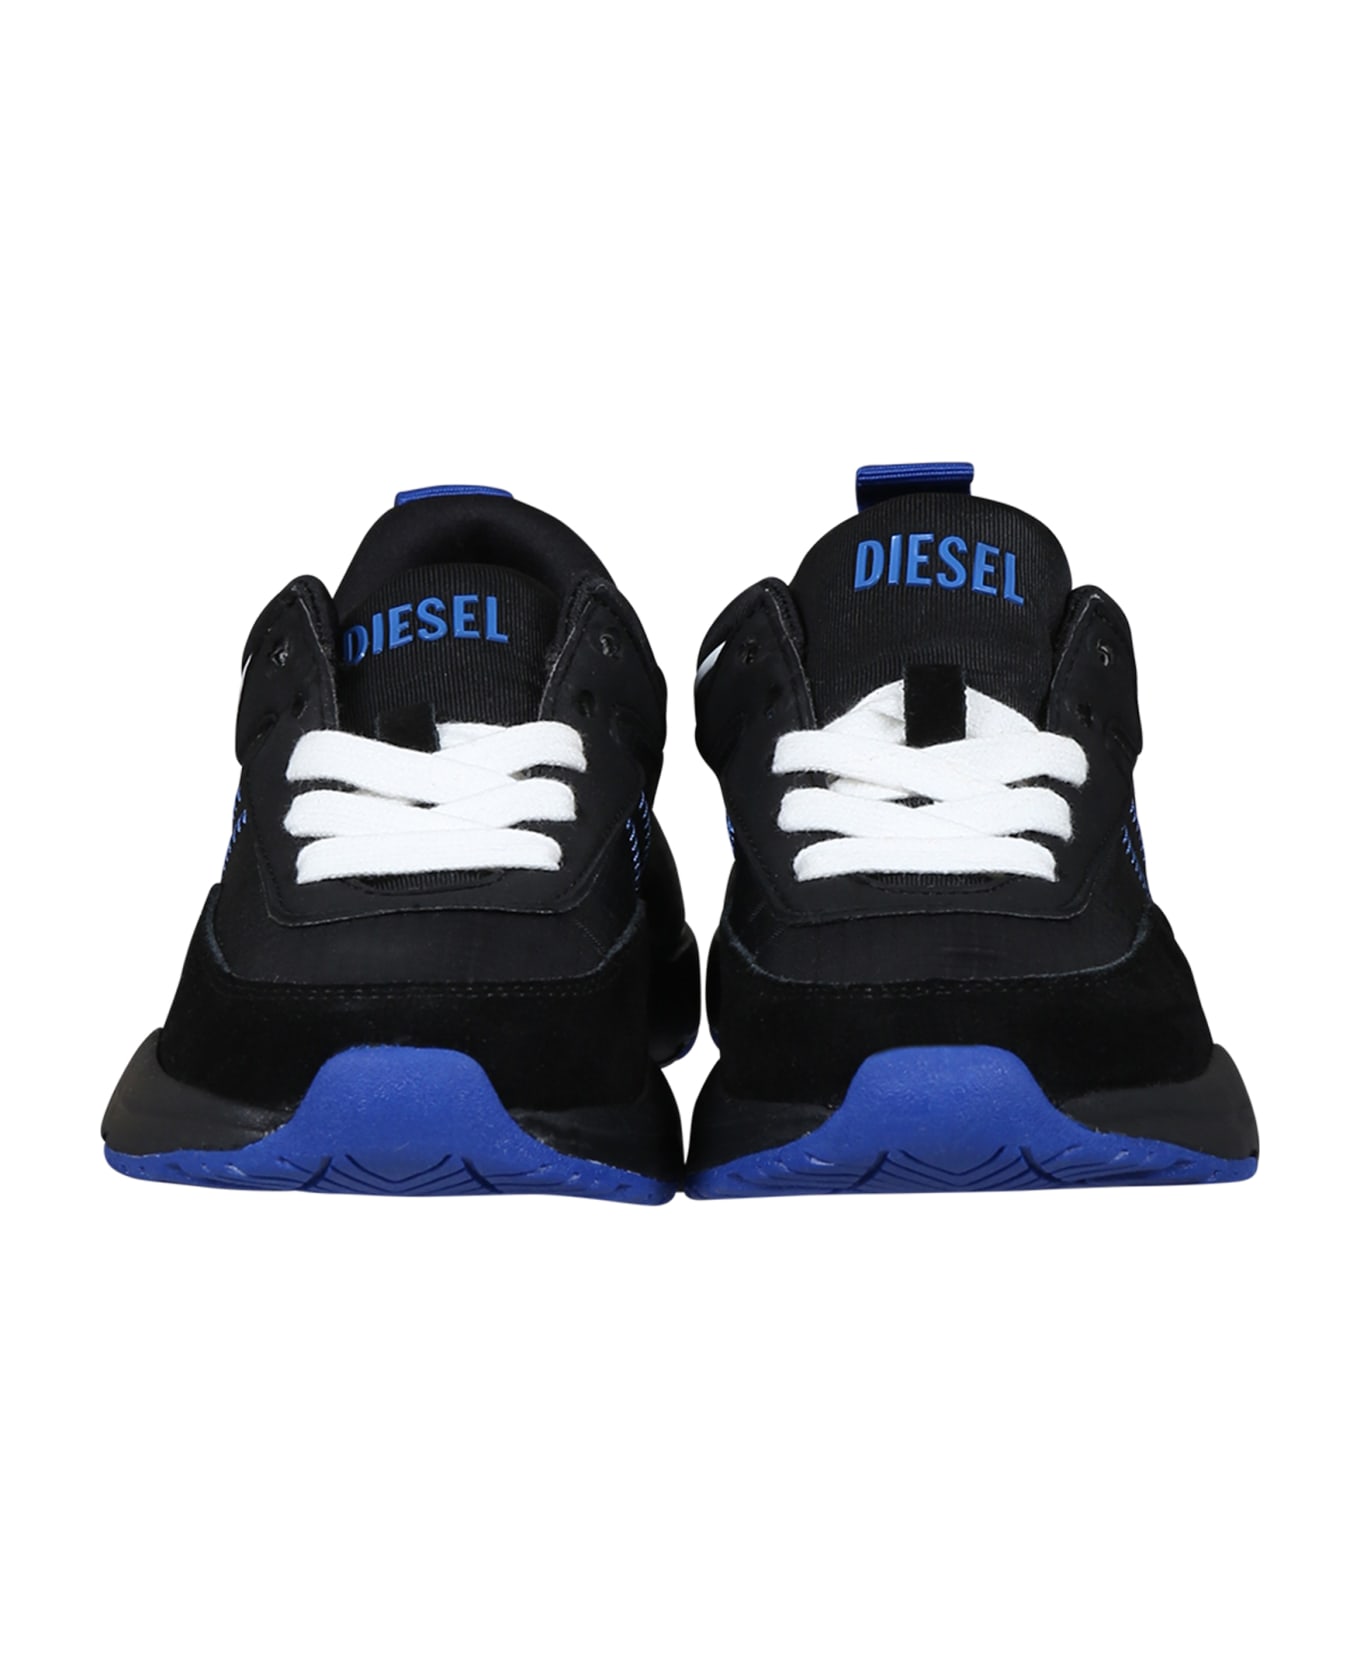 Diesel Black Sneakers For Kids With Blue Logo - Black